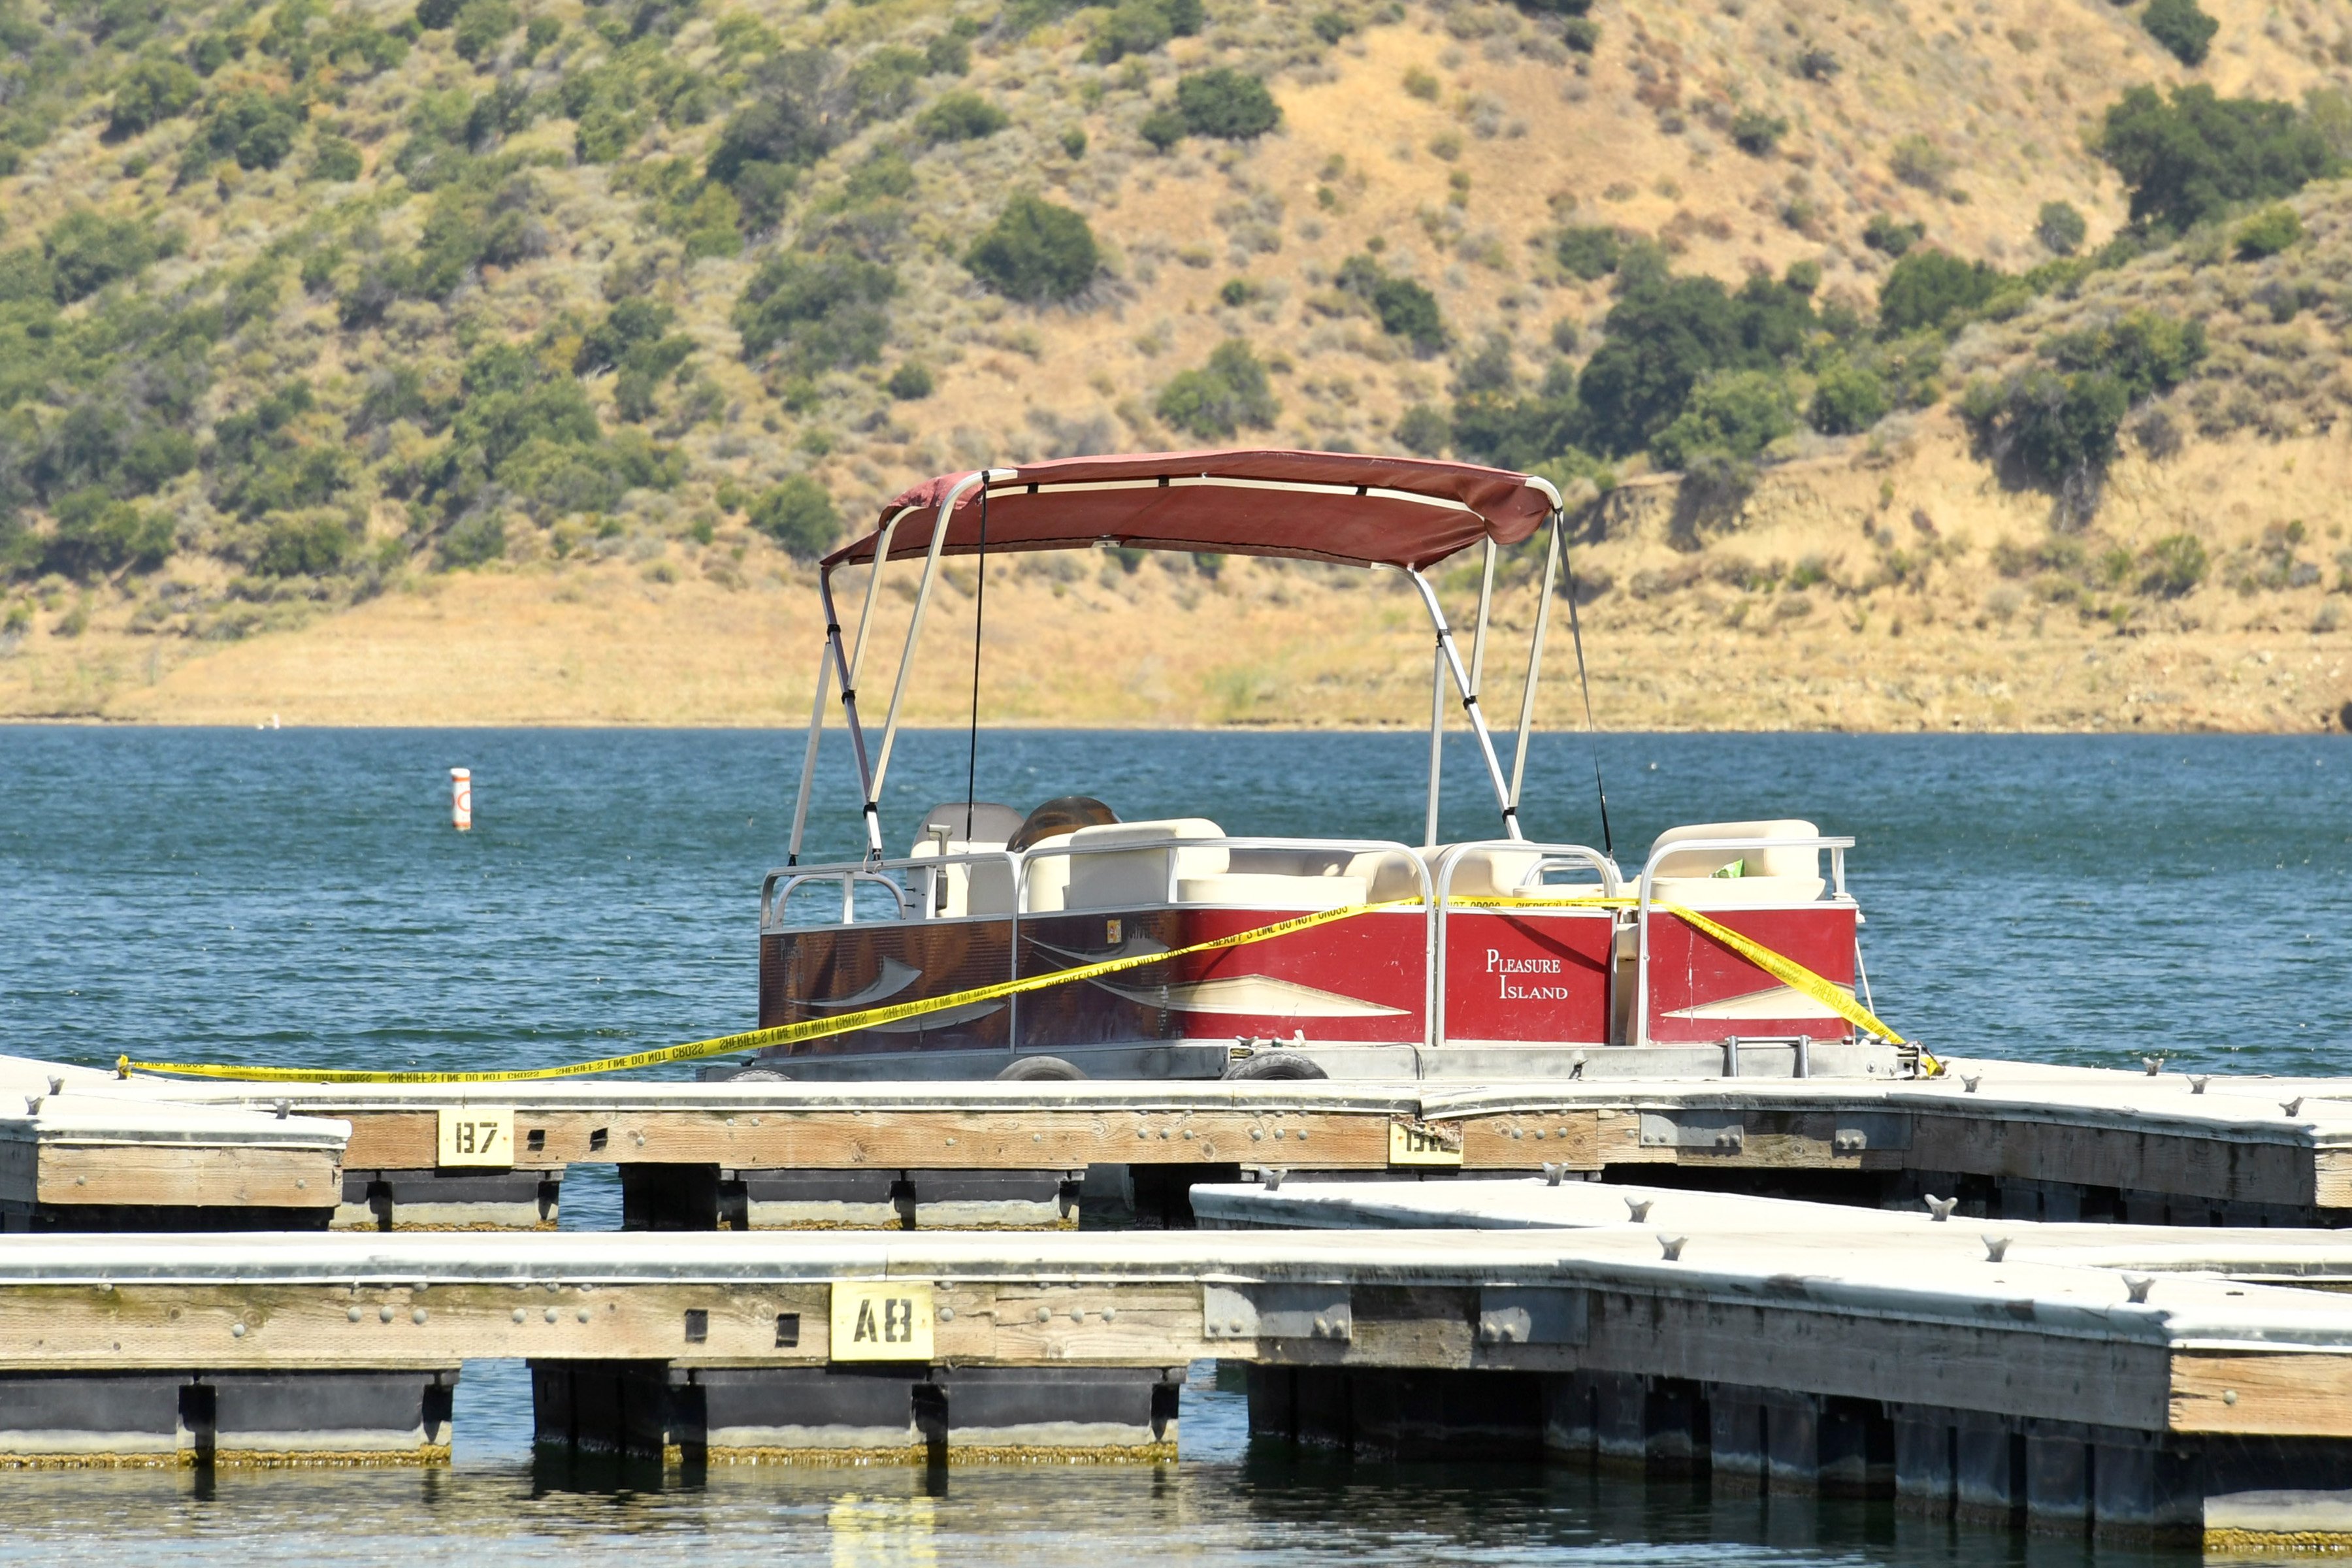 Am Piru-See, wo die Schauspielerin Naya Rivera in Piru, Kalifornien, als vermisst gemeldet wurde, liegt ein Boot an und ist mit einem Polizeiband abgesichert. | Quelle: Getty Images